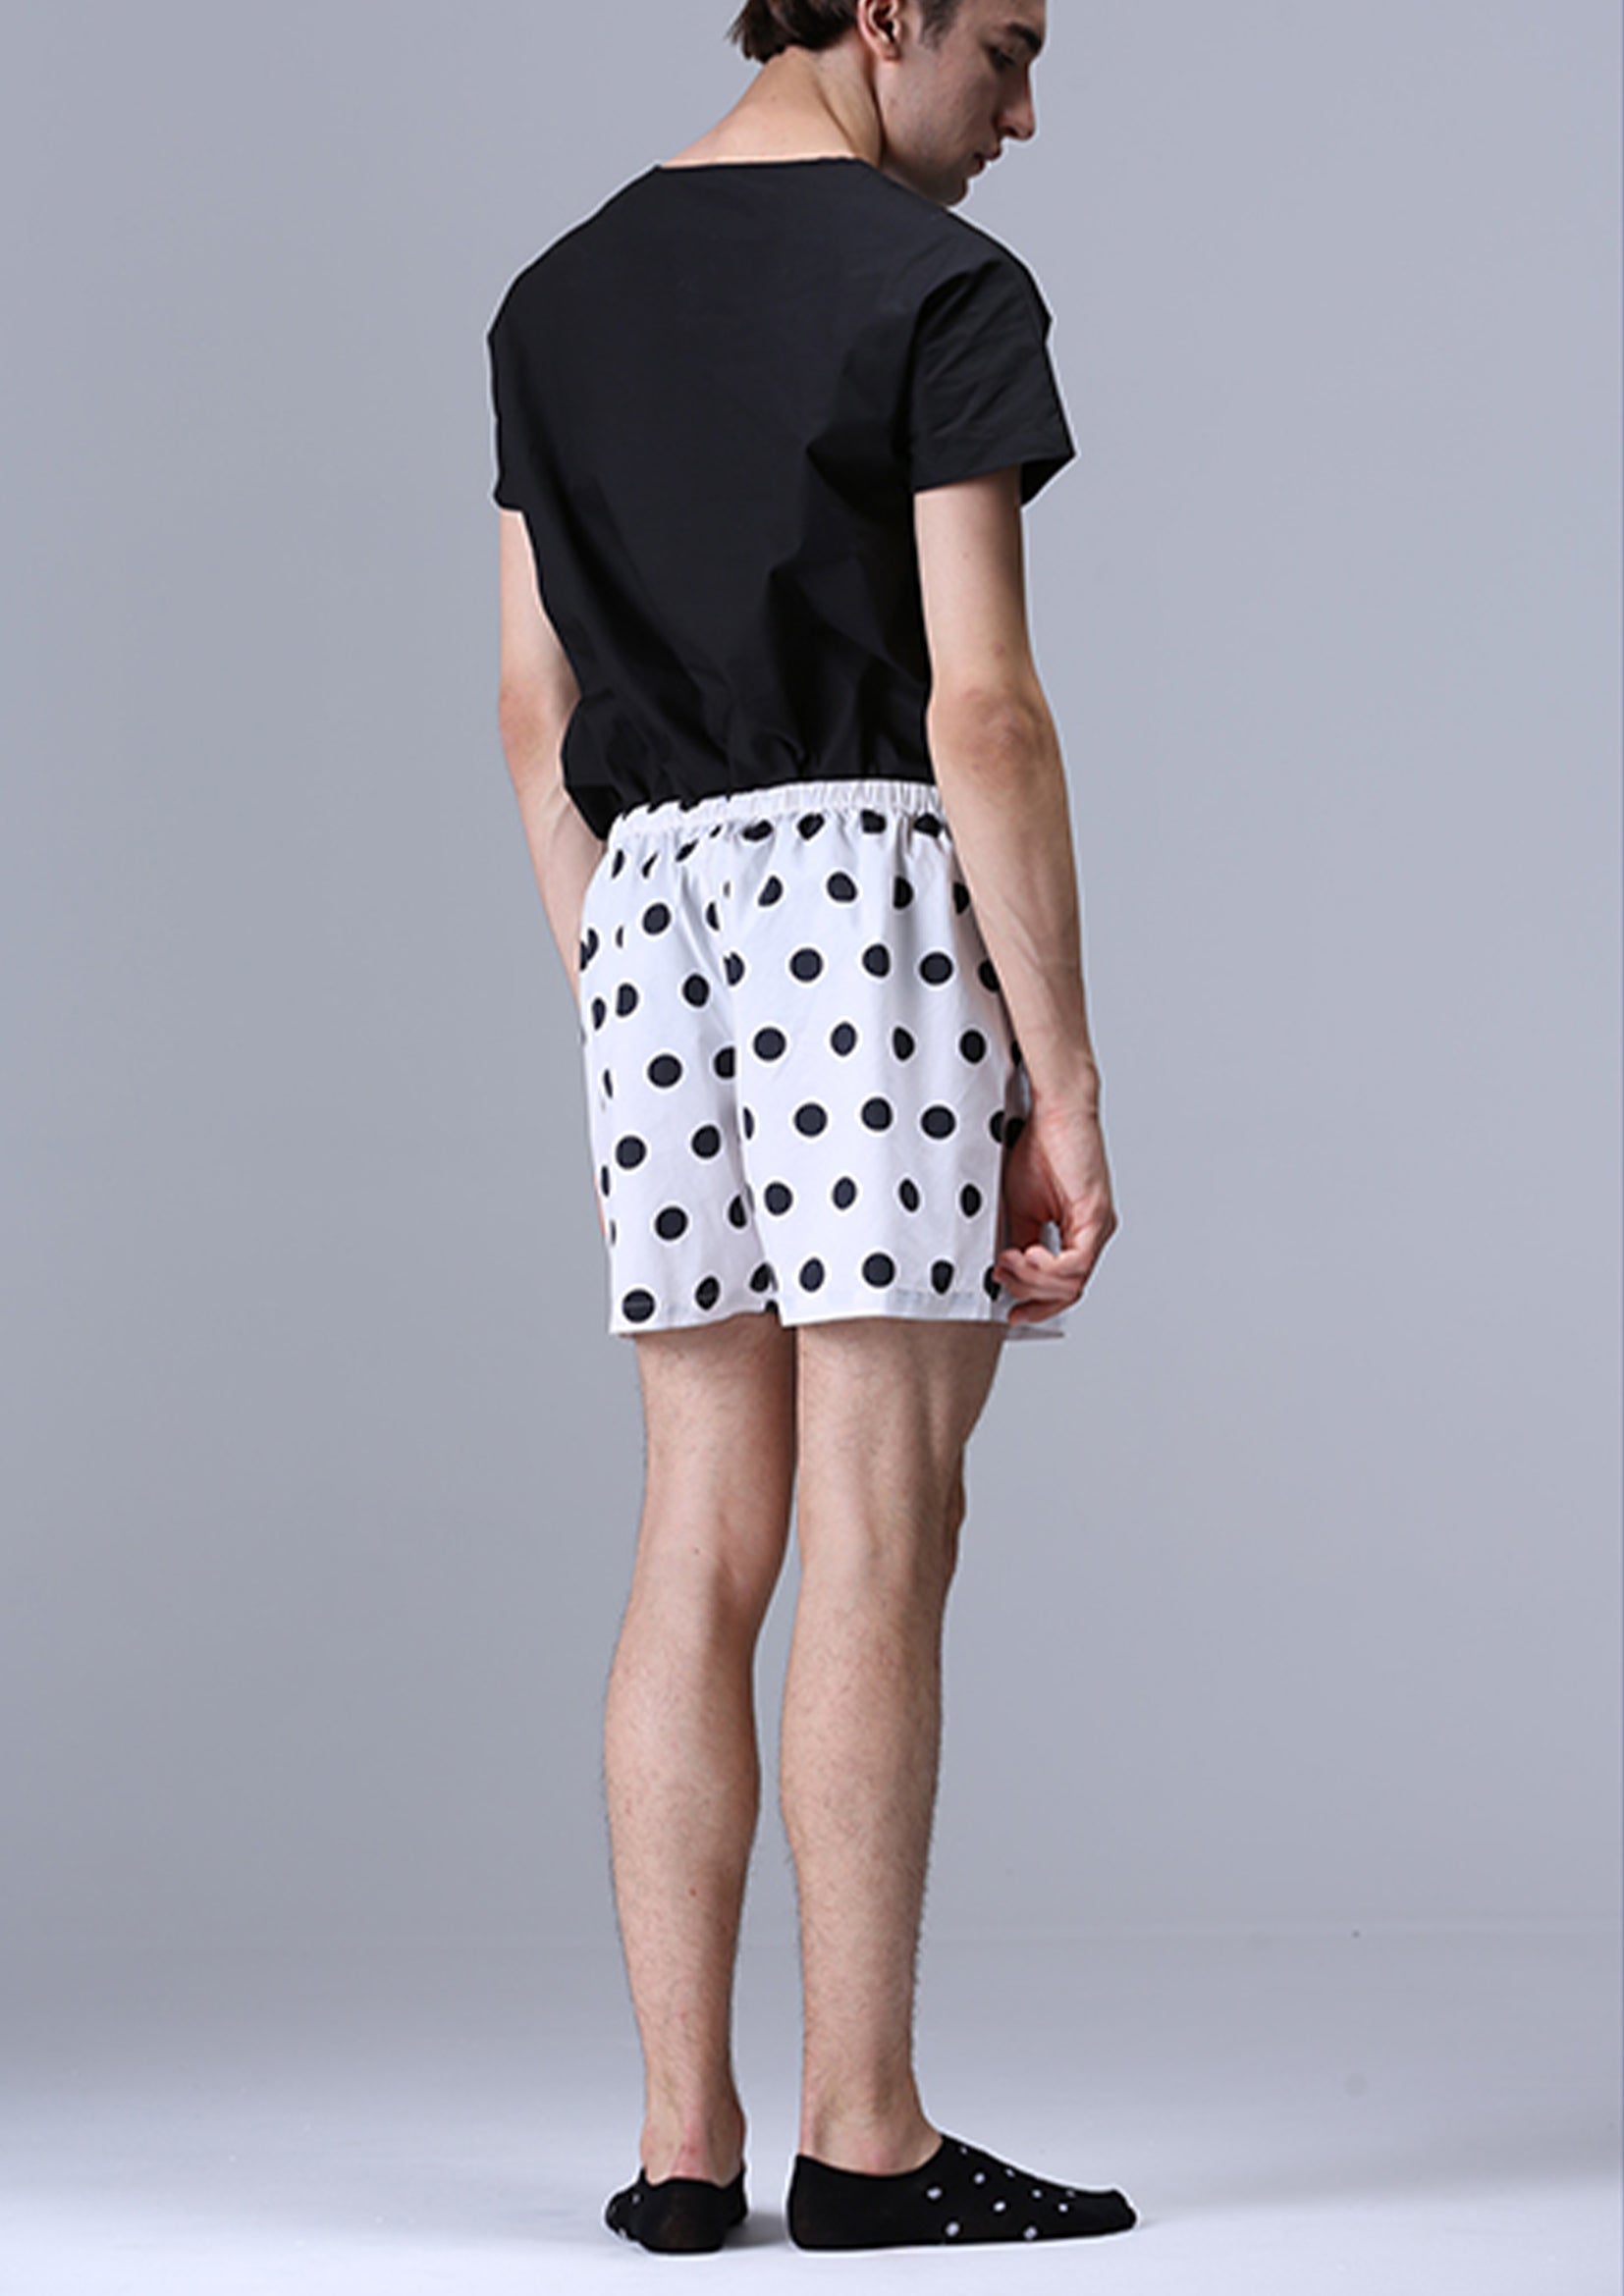 Unisex boxer shorts underwear in polka dots